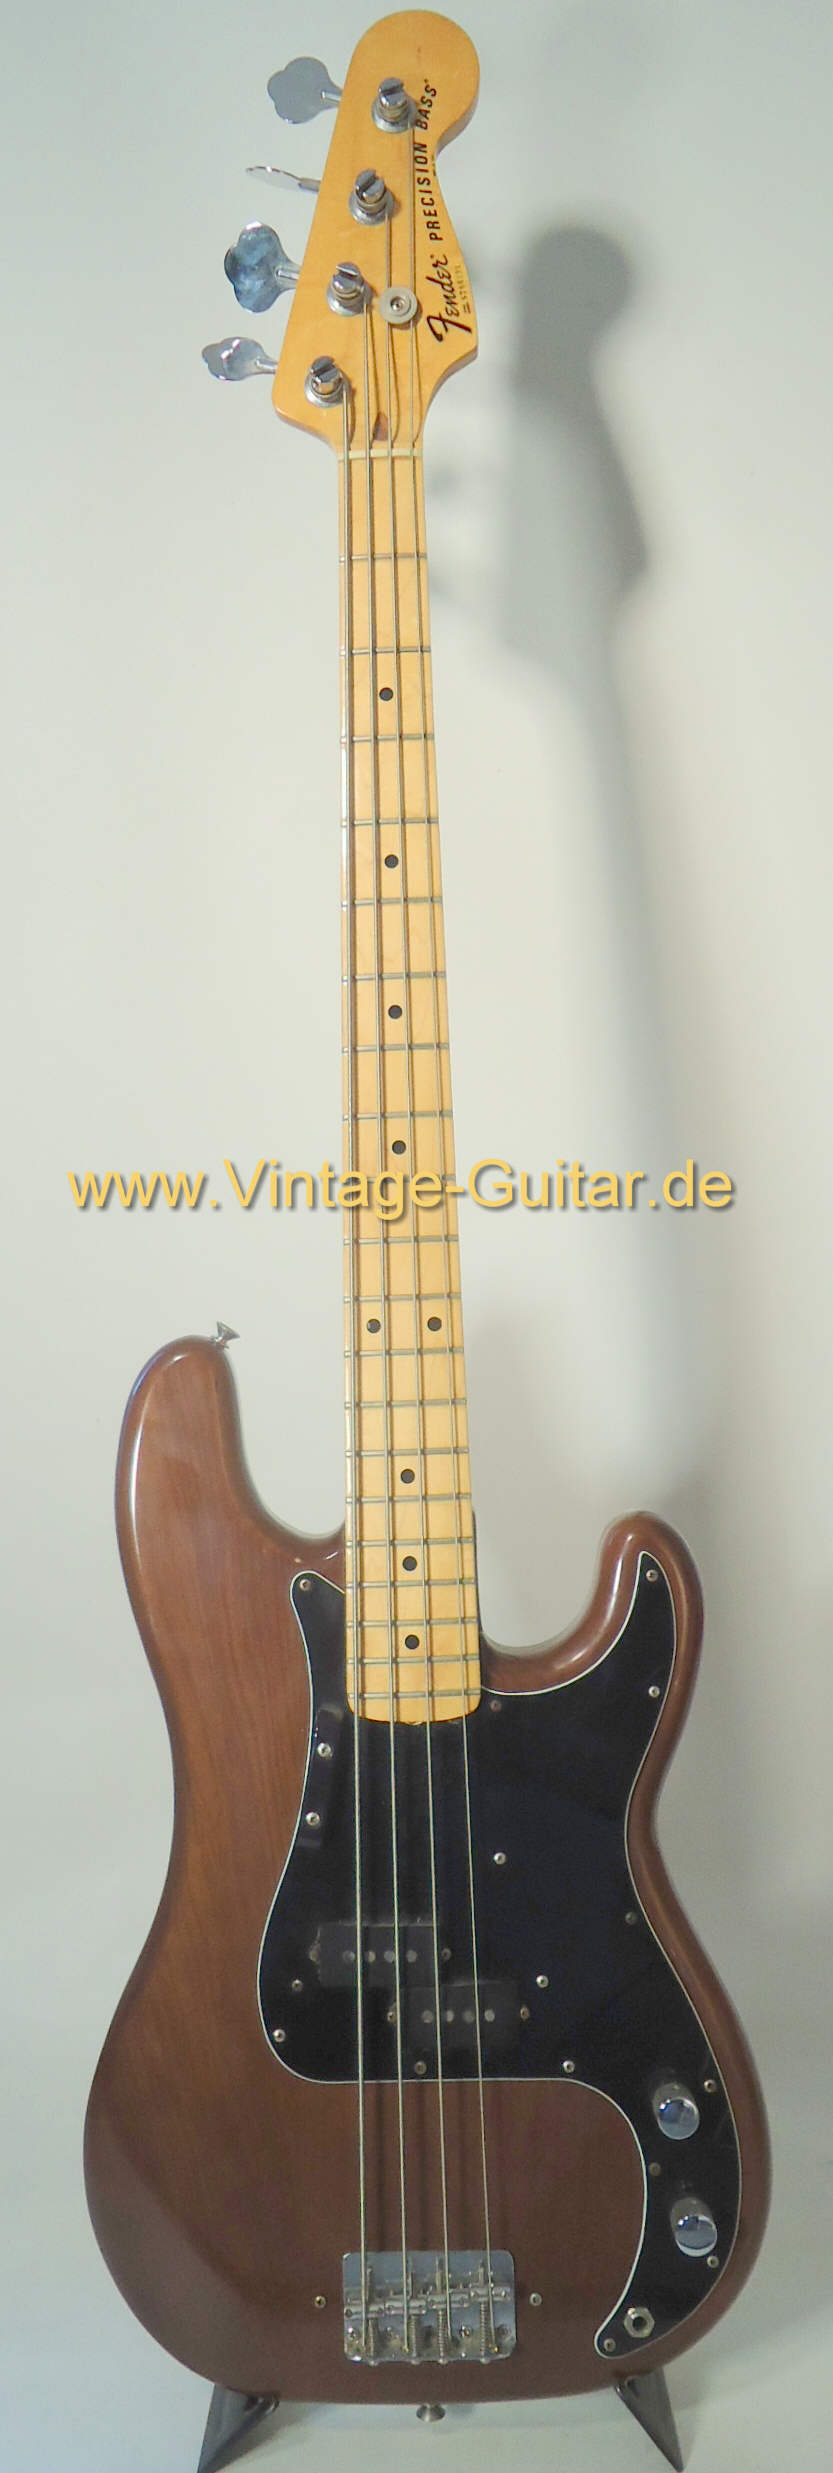 Fender-Precision-1977-mocha-a.jpg